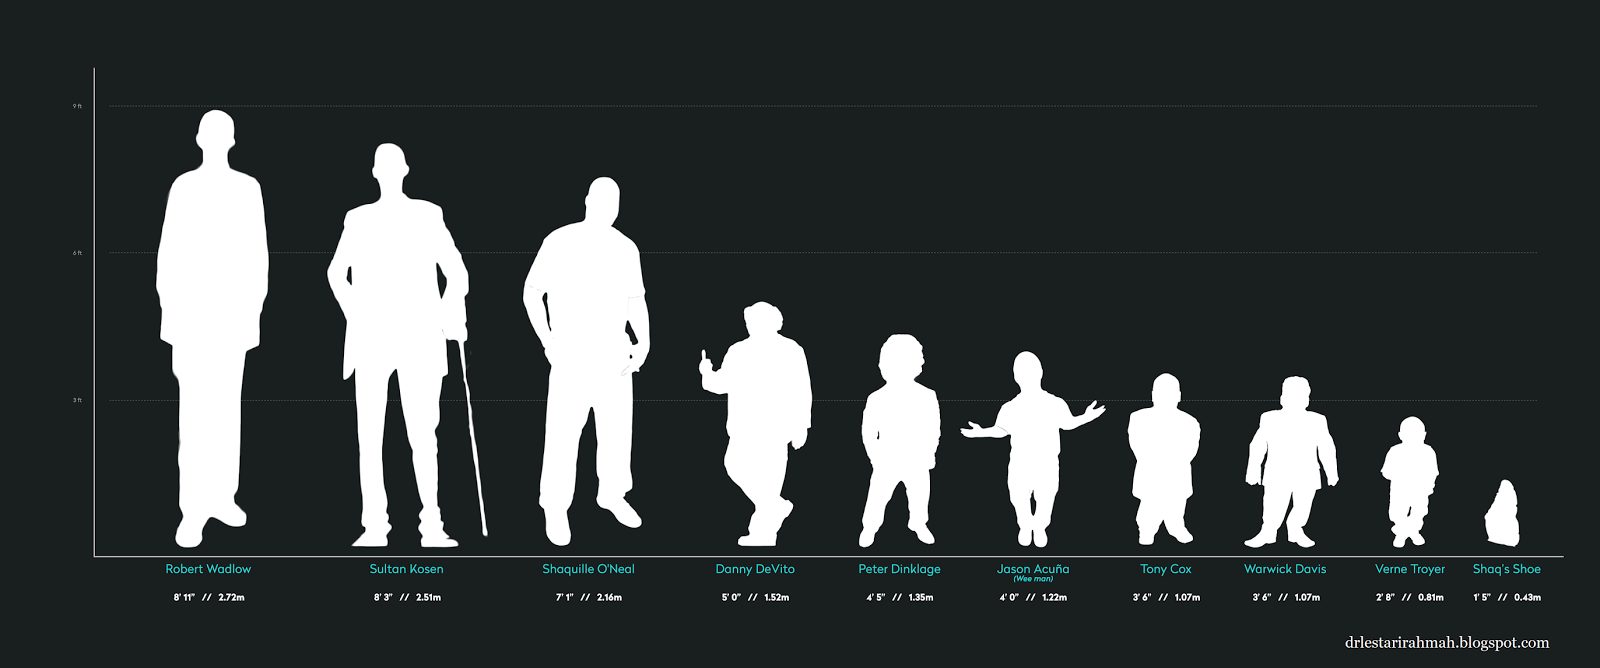 Исследование роста человека. Рост человека. Сравнения рогсгта человека. Люди по росту. Сравнение роса человека.